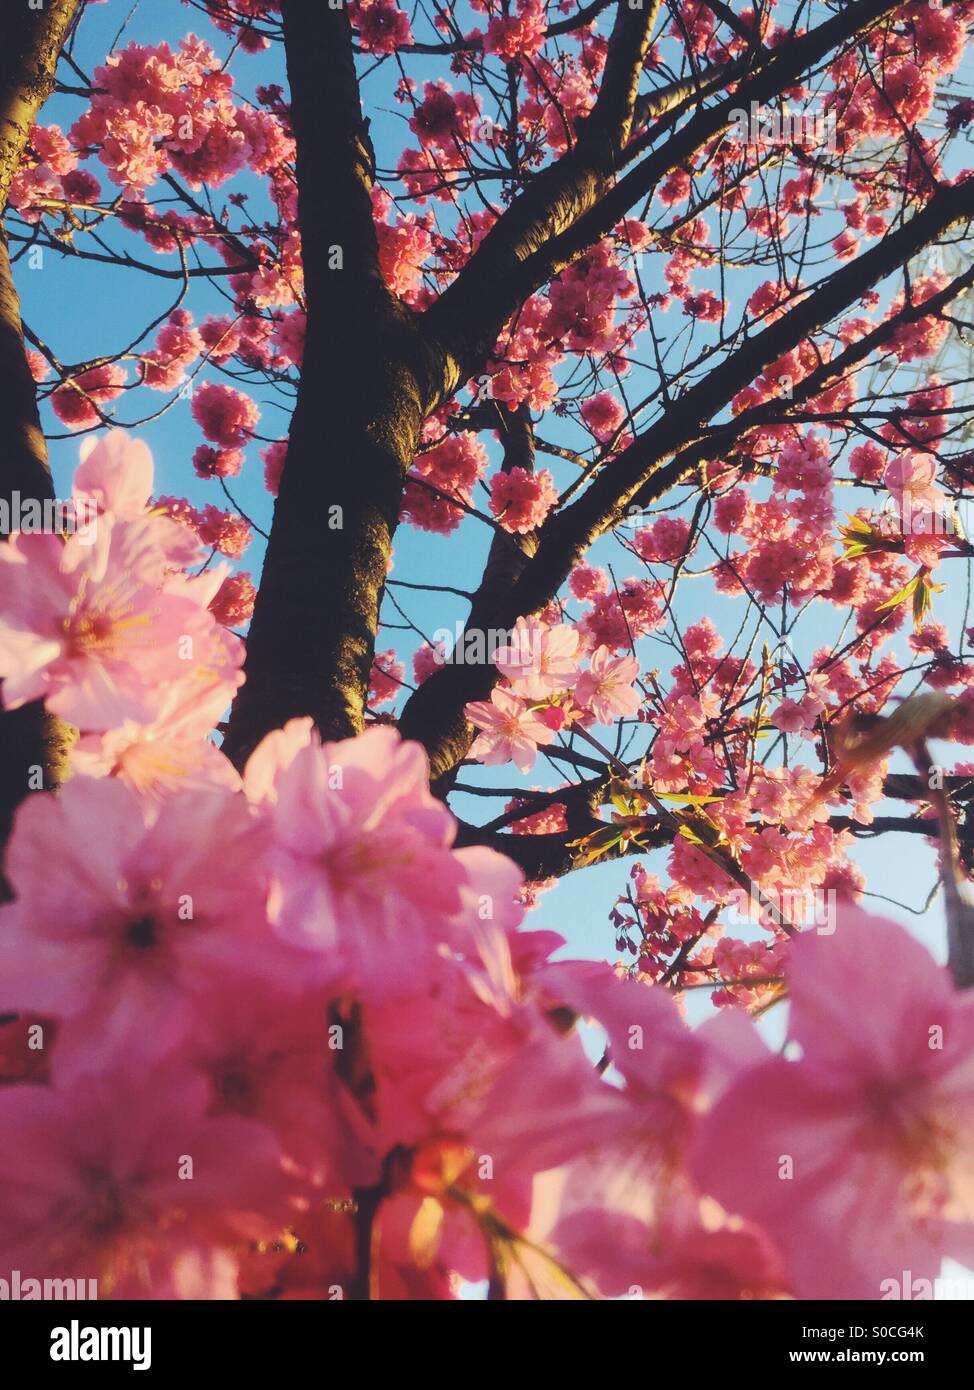 Hermosa rosa sakura o cerezo, bañado con una puesta de sol naranja fosforescente. Foto de stock